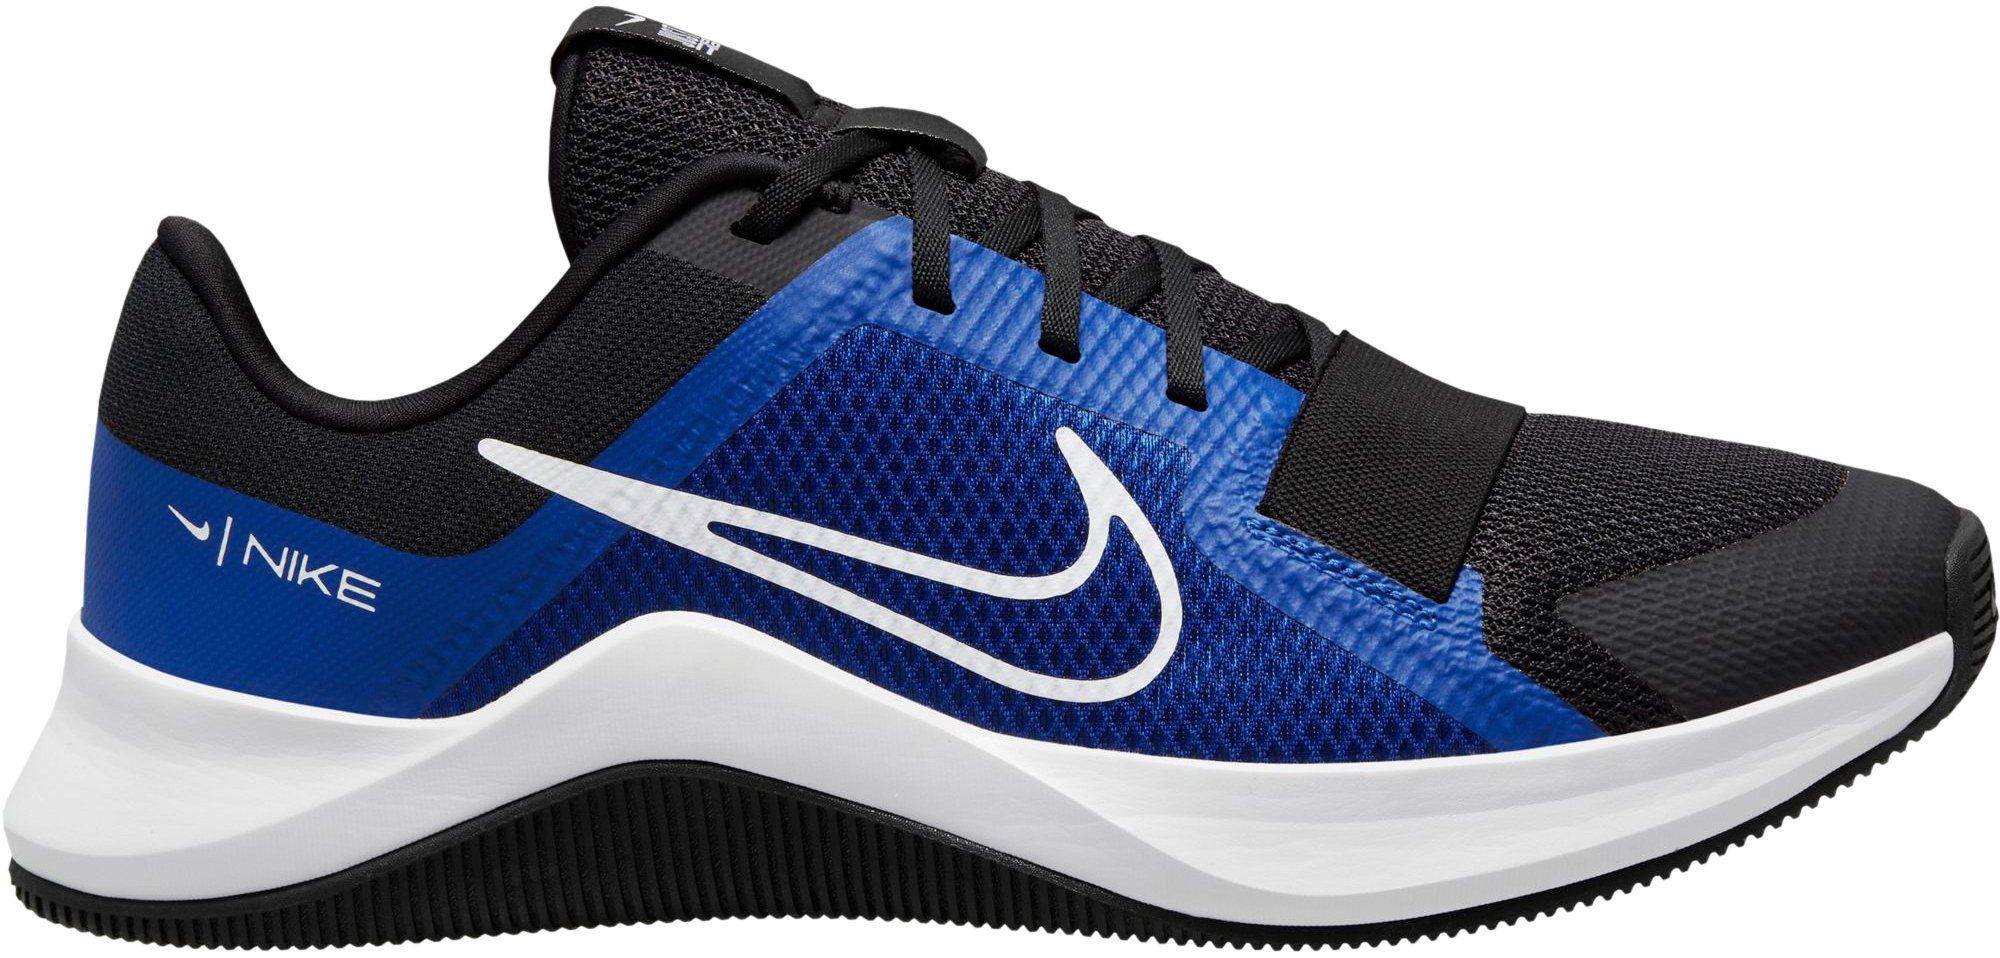 Günstige Nike Herrenschuhe online kaufen | OTTO